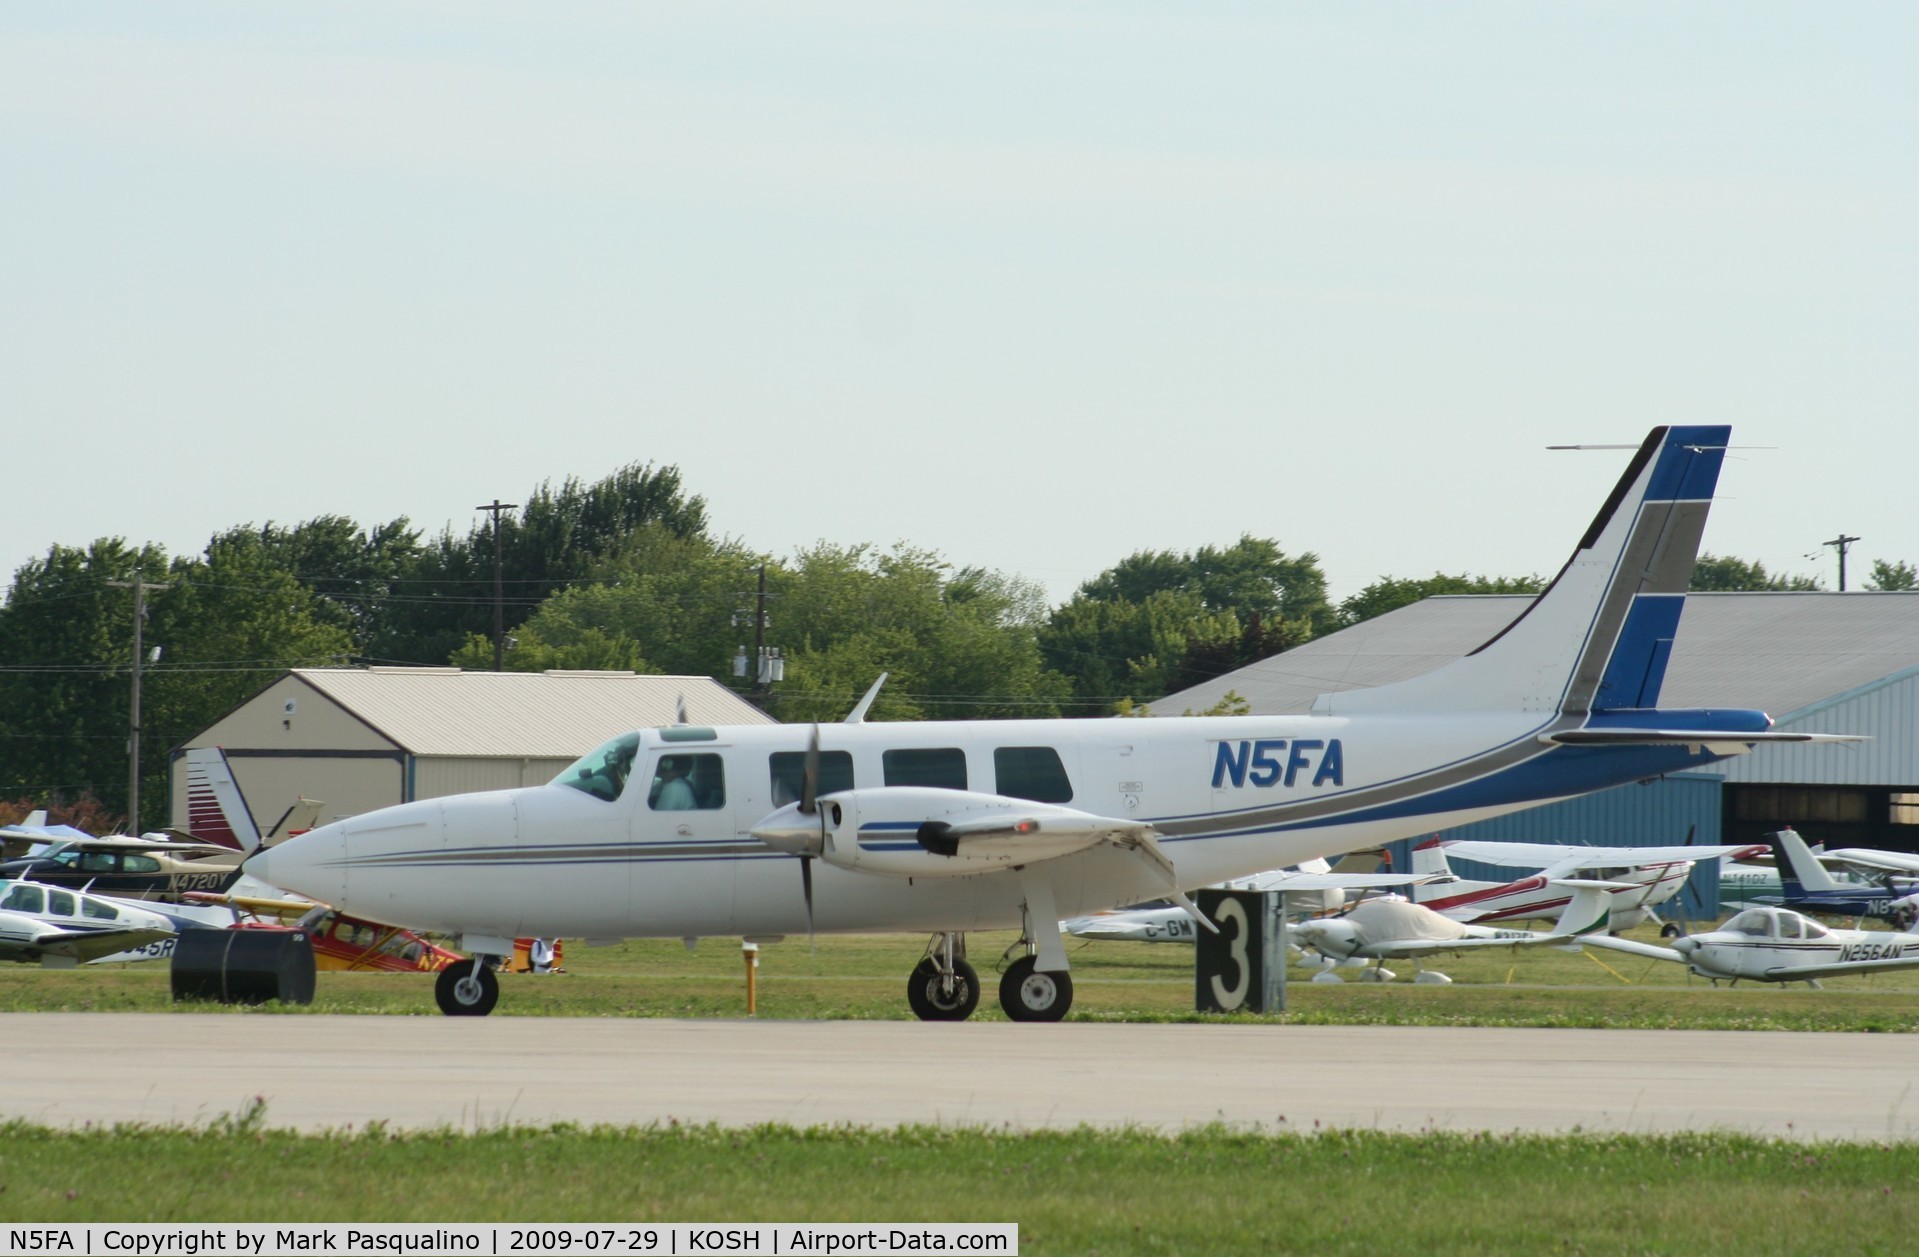 N5FA, Smith Aerostar 600 C/N 600310115, Aerostar 600